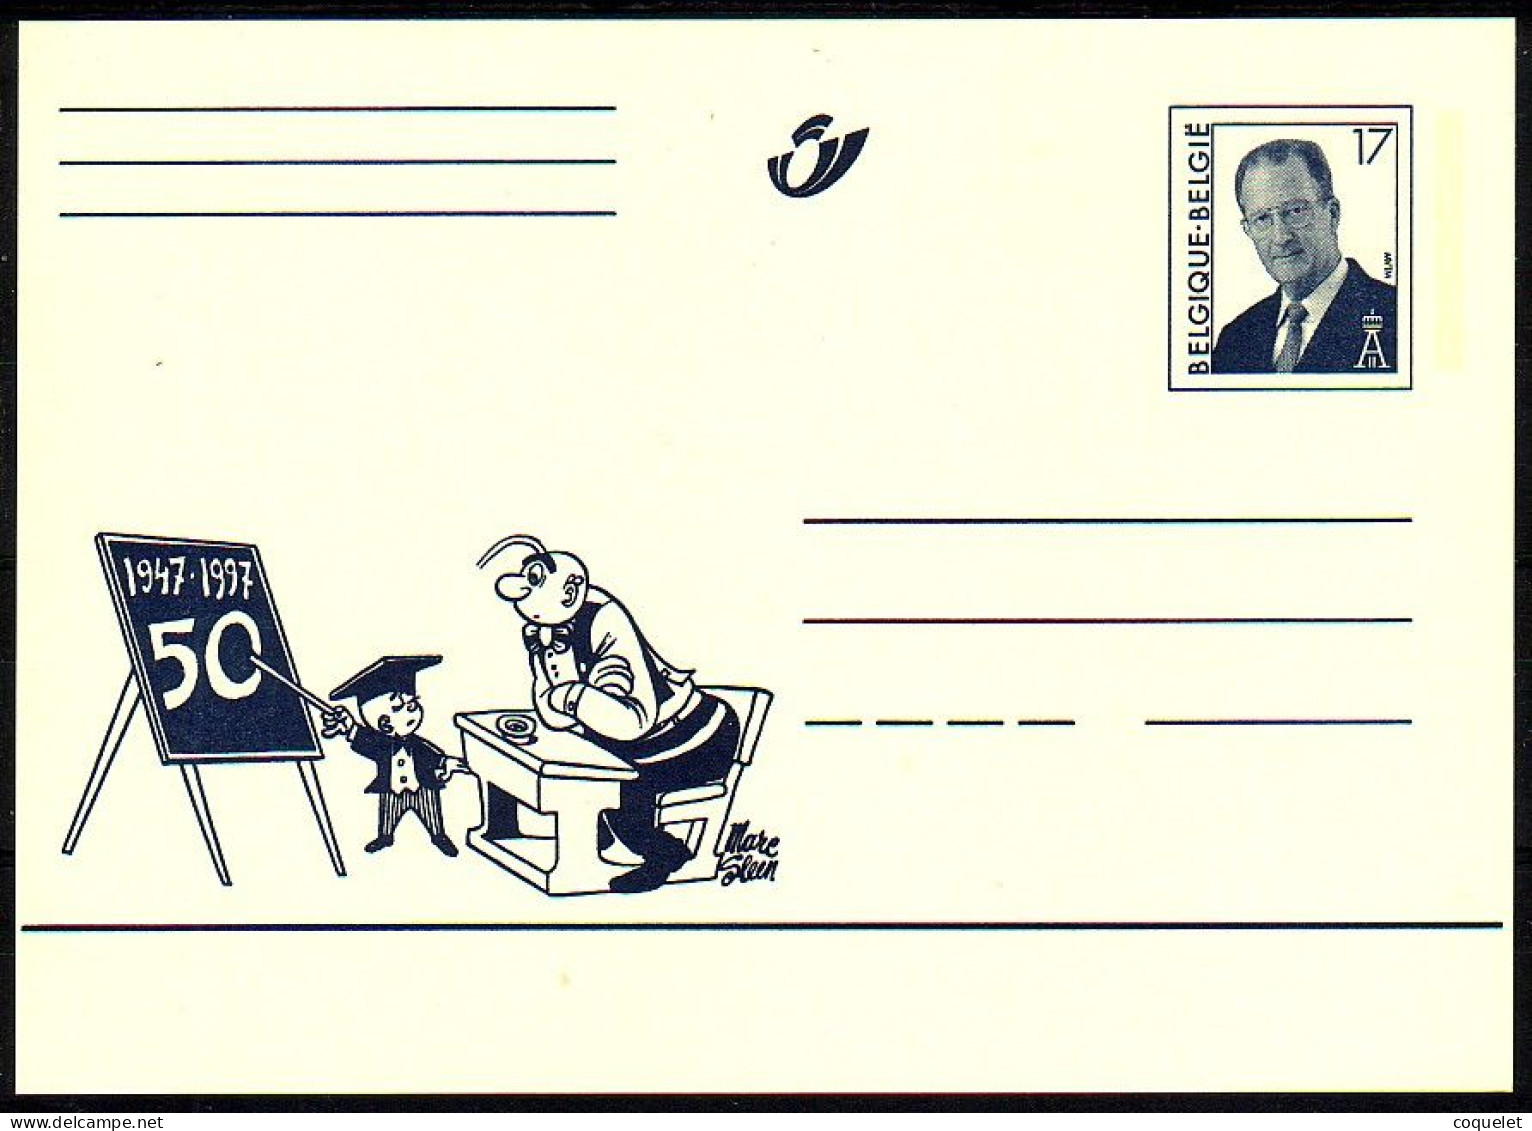 Belgique - Entiers Postaux - Cartes Illustrées N° 64 # NERON à L'école # Son Cinquantenaire 1947-1997 - Comics